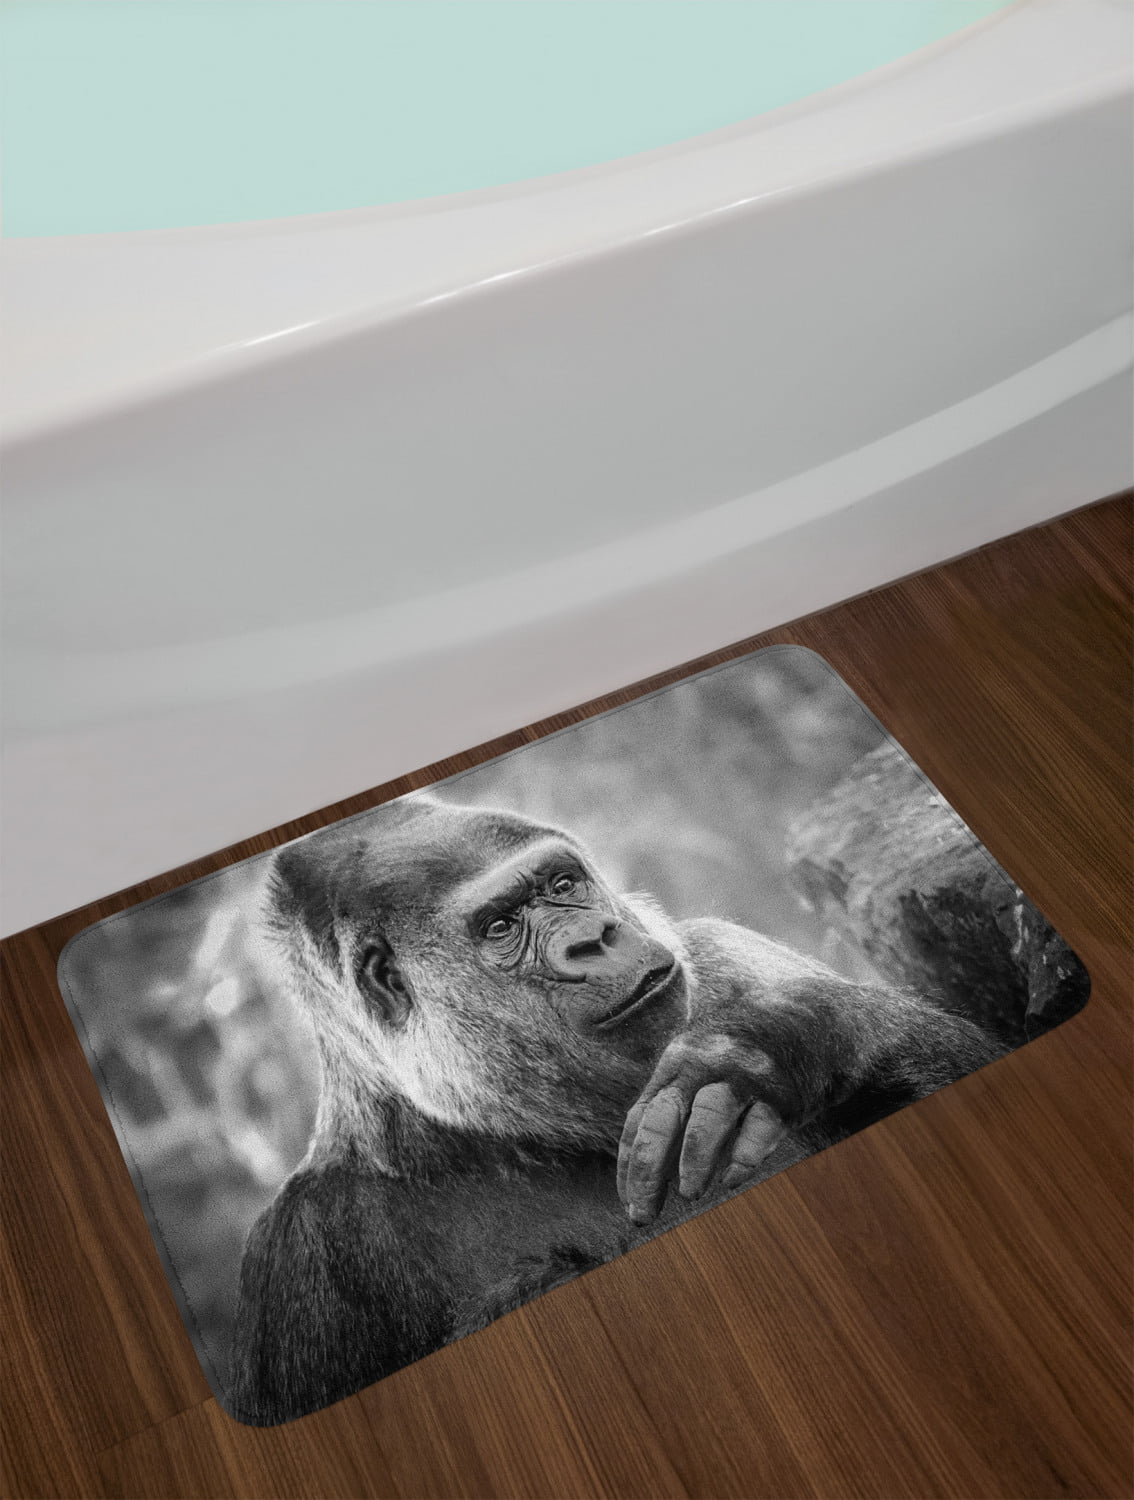 Gorilla Bath Mat, Close up Shot of an Ape Animal on a Blurry